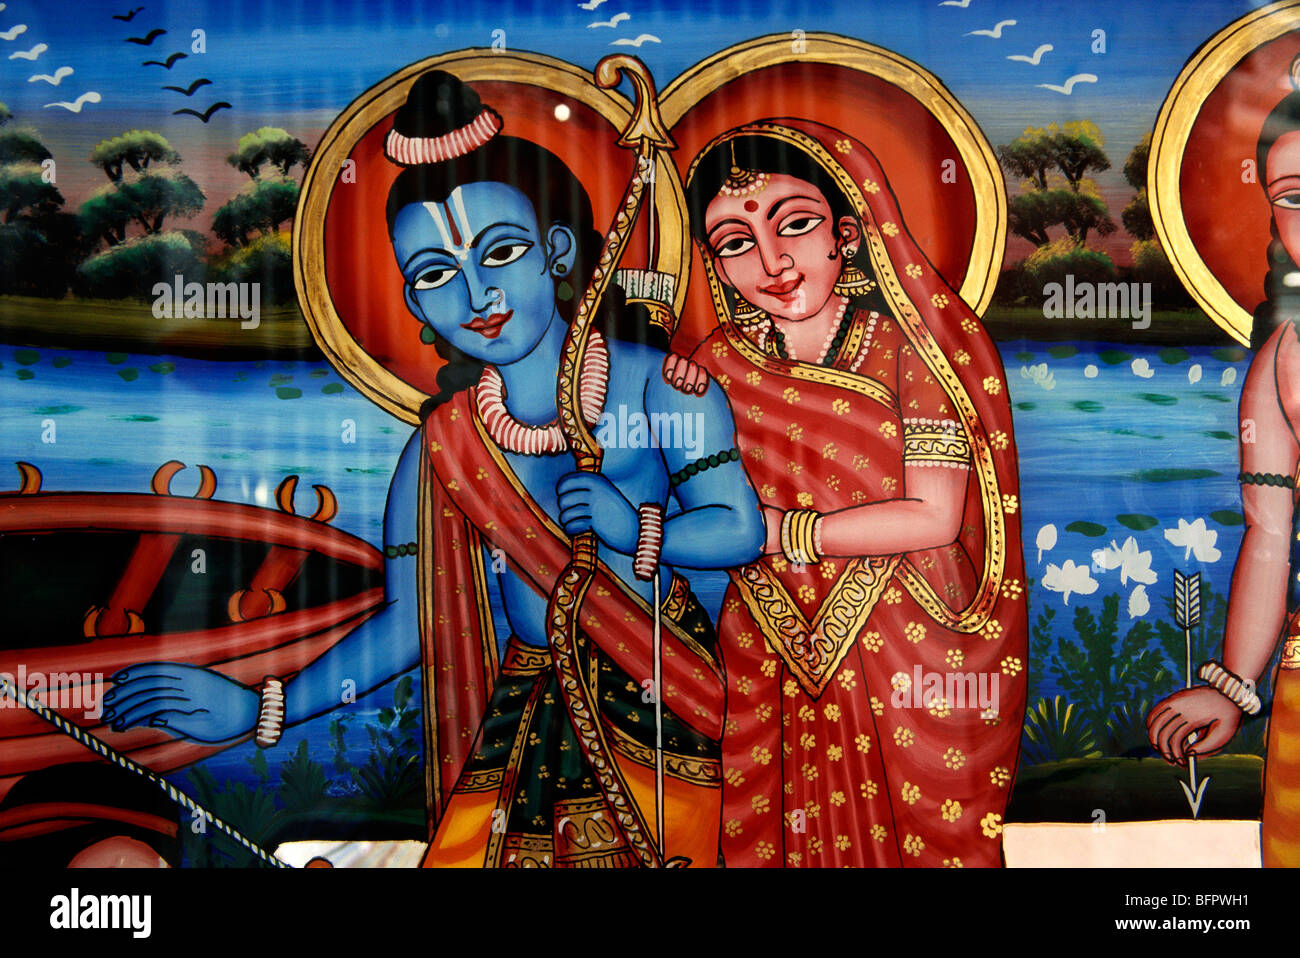 Ram et Sita Ramayana mur de scène peinture Khed le Rajasthan en Inde Banque D'Images